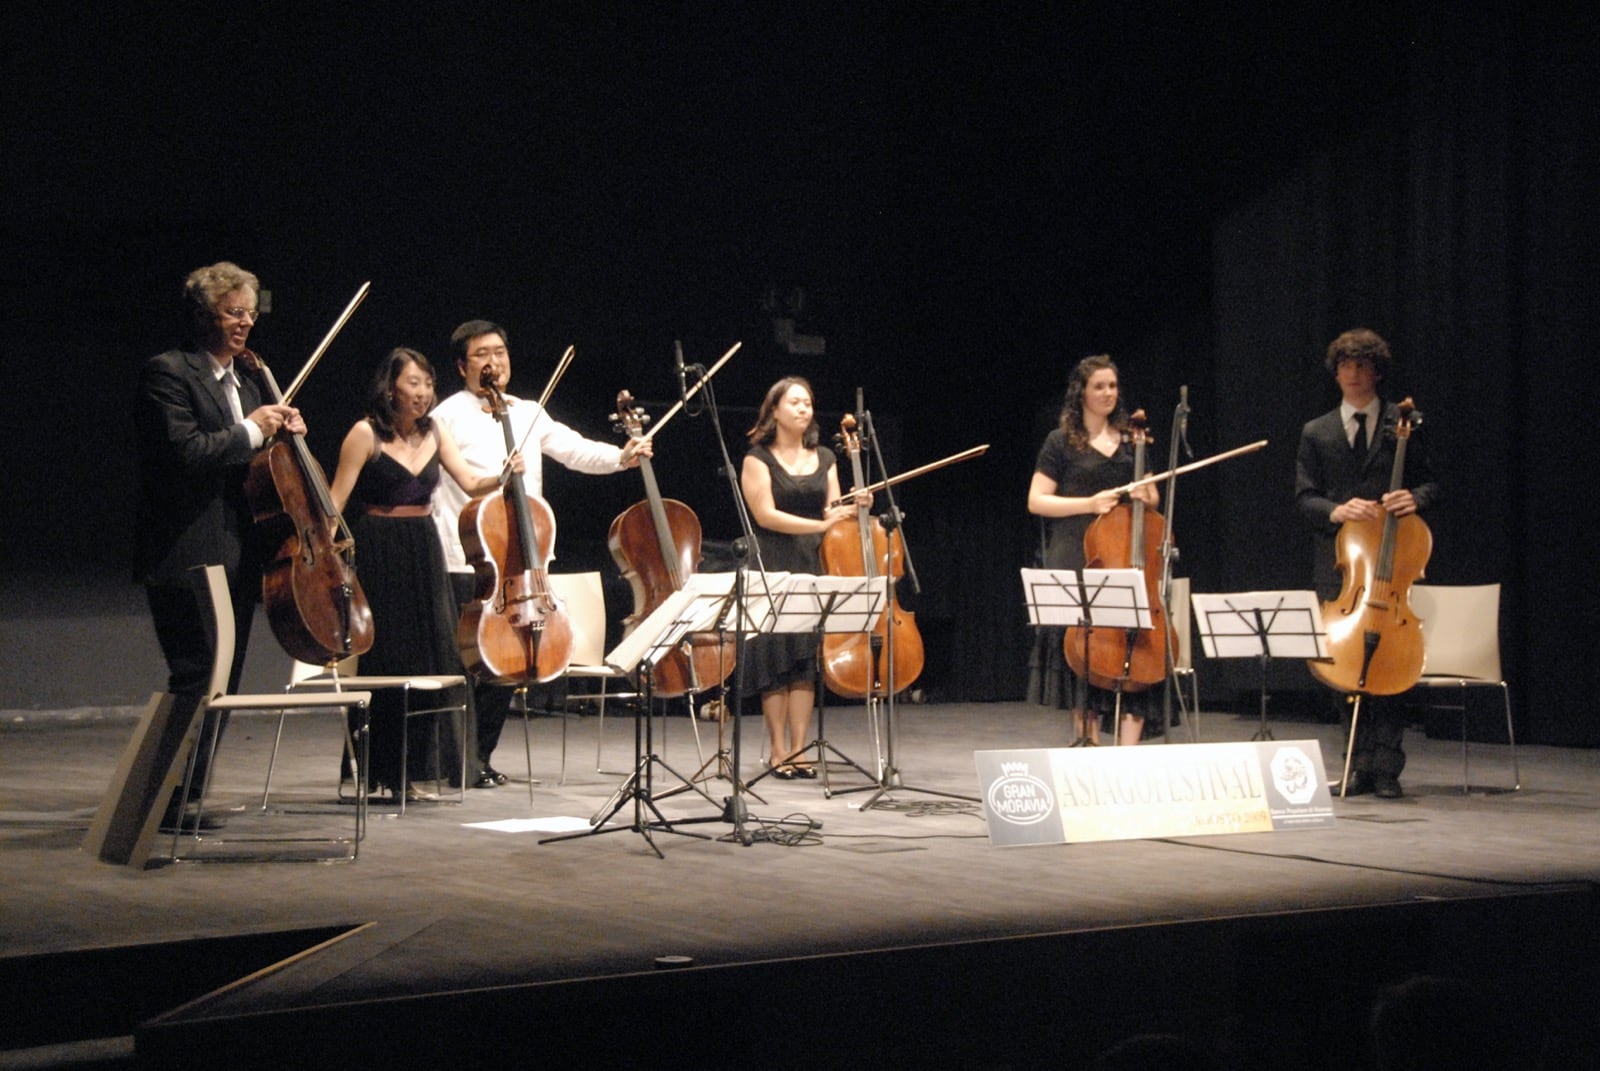 06-08-2009 - Cello Passionato005 - 